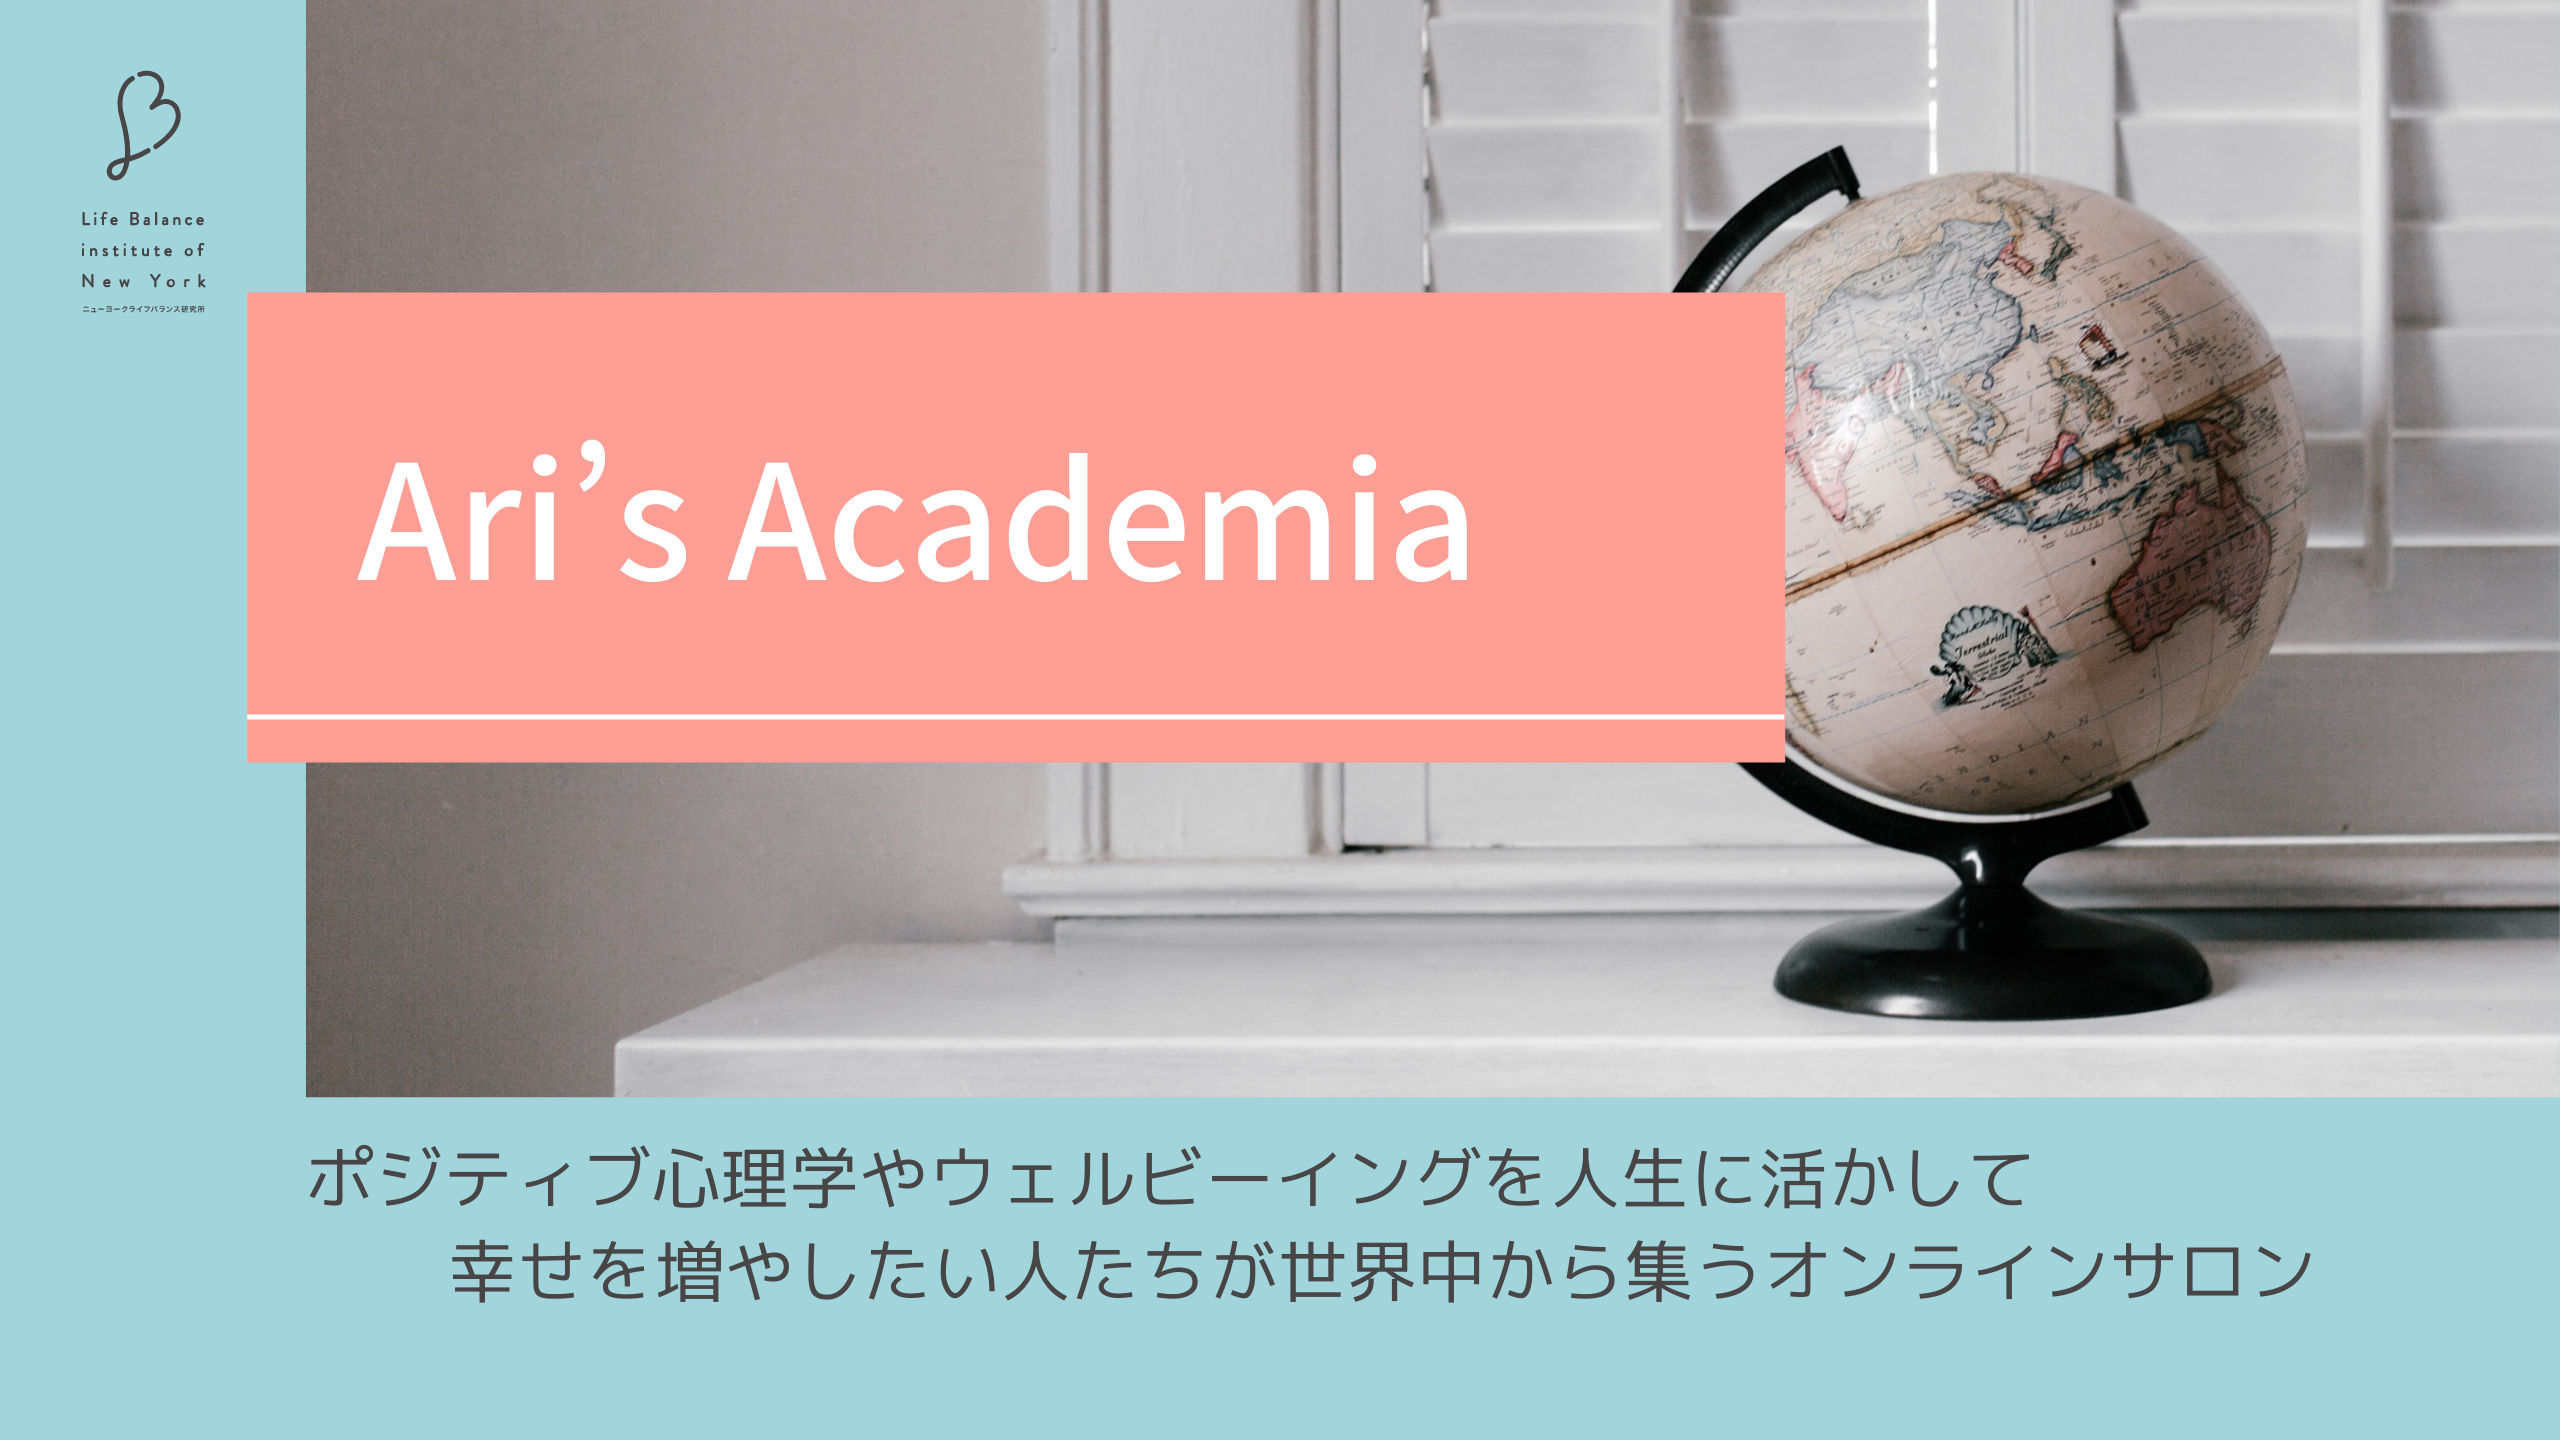 Ari's Academia